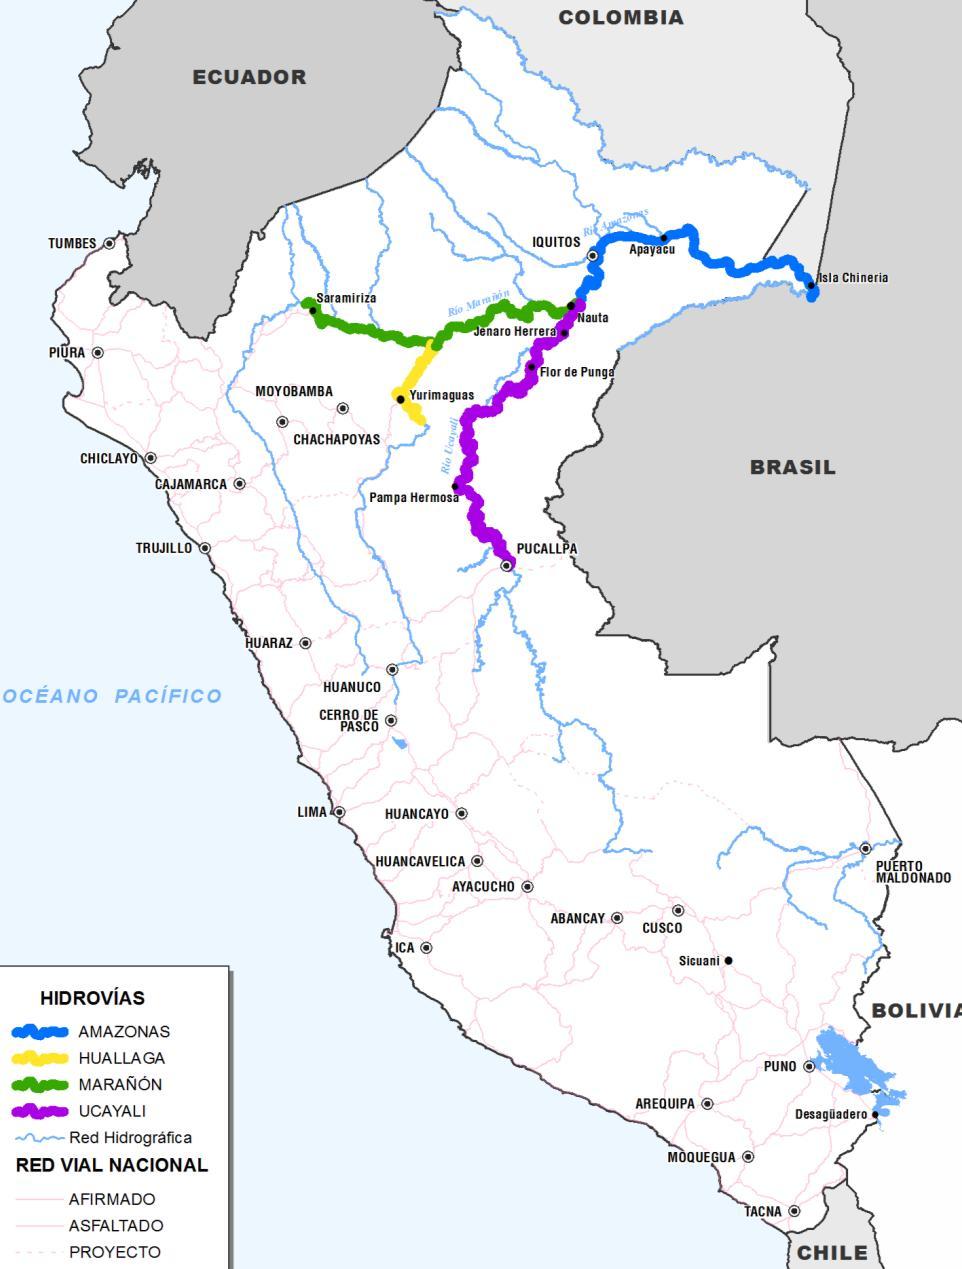 OBJETIVO GENERAL Desarrollo del Sistema Hidroviario de la Amazonía para mantener la navegación en condiciones seguras los 365 días del año, en los Ríos Ucayali, Huallaga, Marañón y Amazonas.